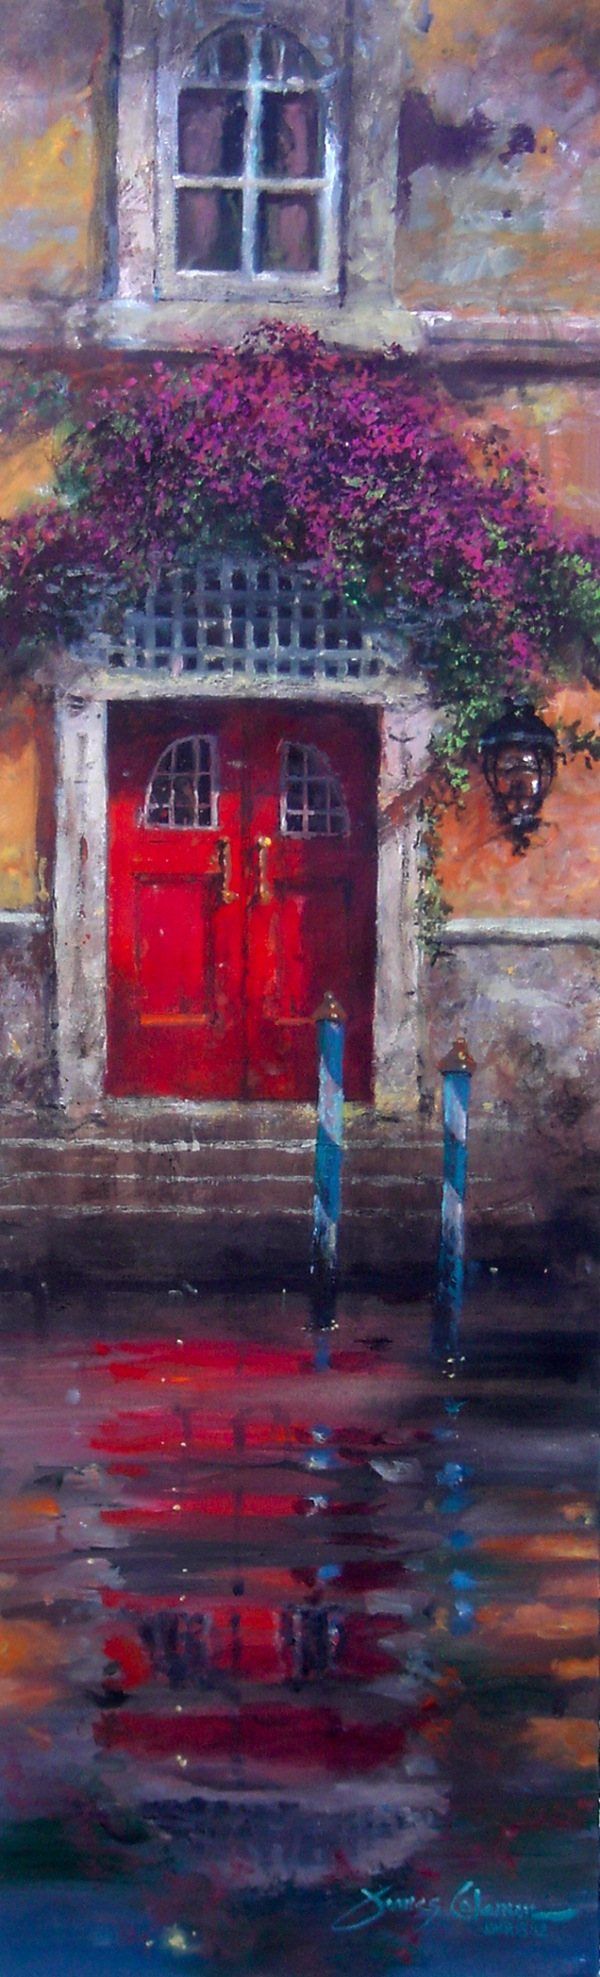 2011 red door reflection